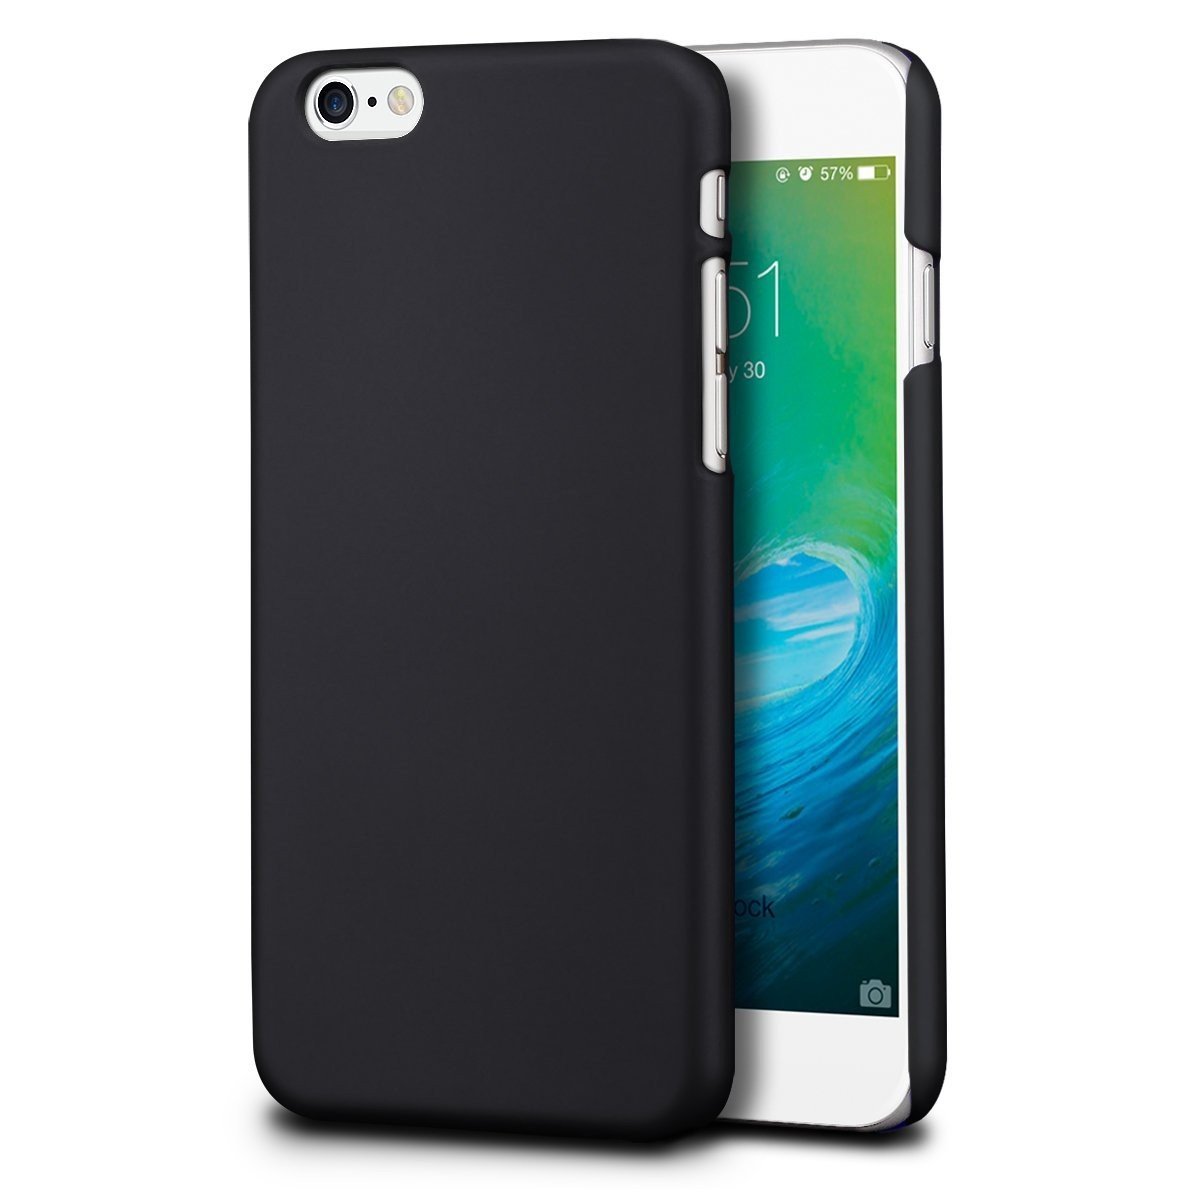 Hoesje Apple iPhone 6S hard case zwart